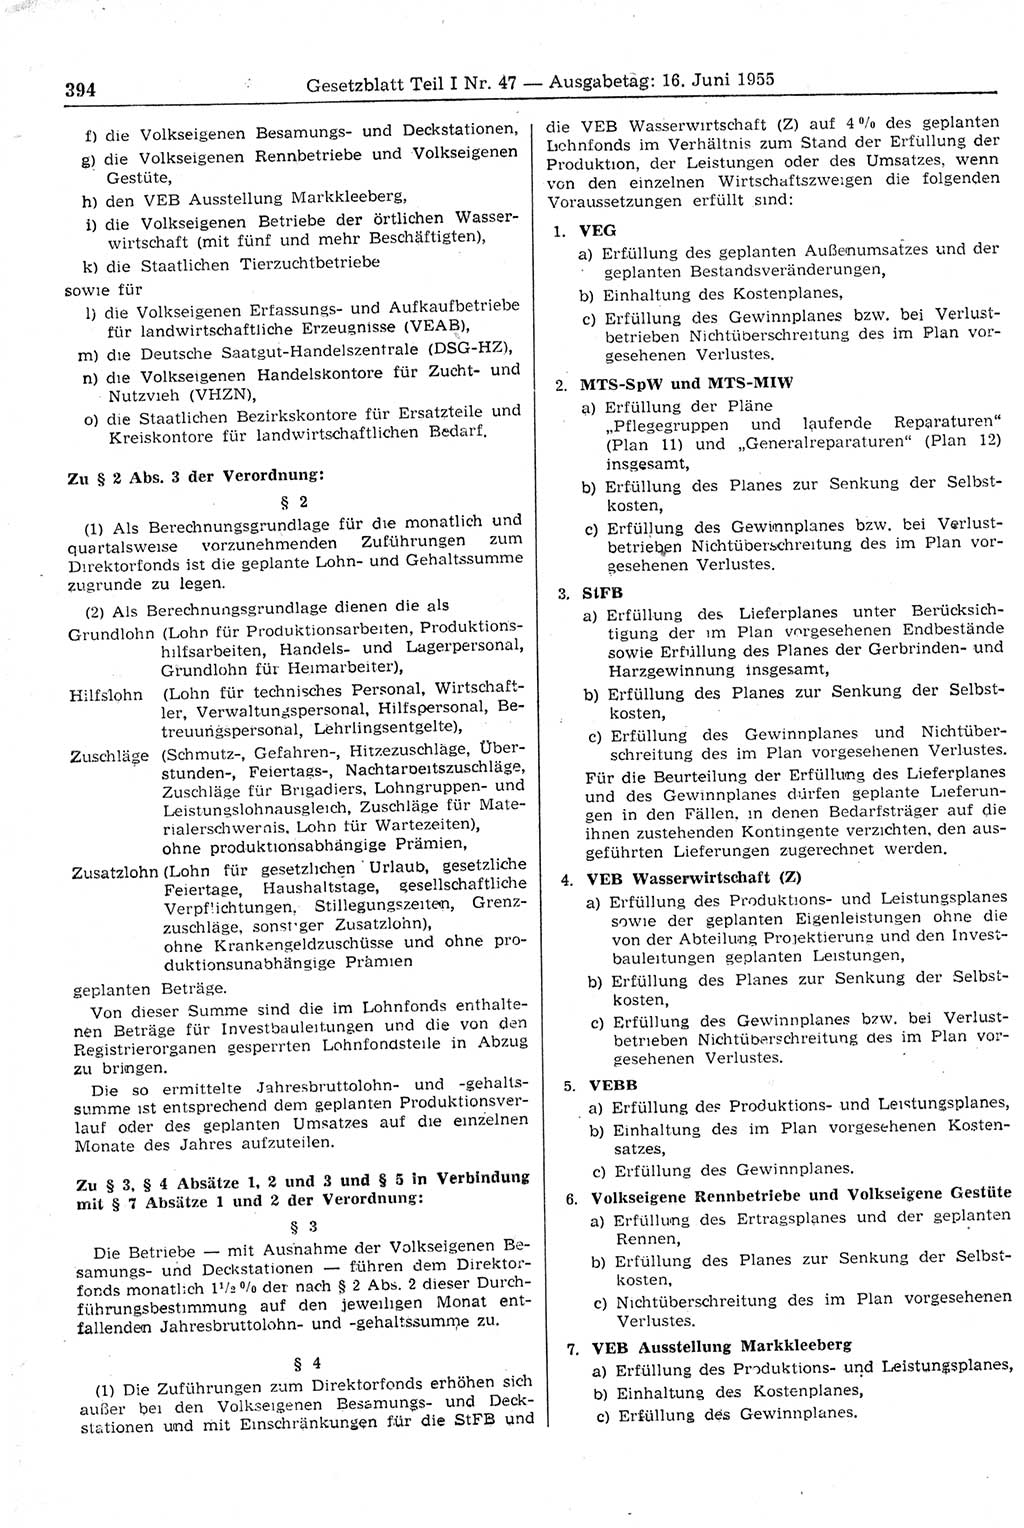 Gesetzblatt (GBl.) der Deutschen Demokratischen Republik (DDR) Teil Ⅰ 1955, Seite 394 (GBl. DDR Ⅰ 1955, S. 394)